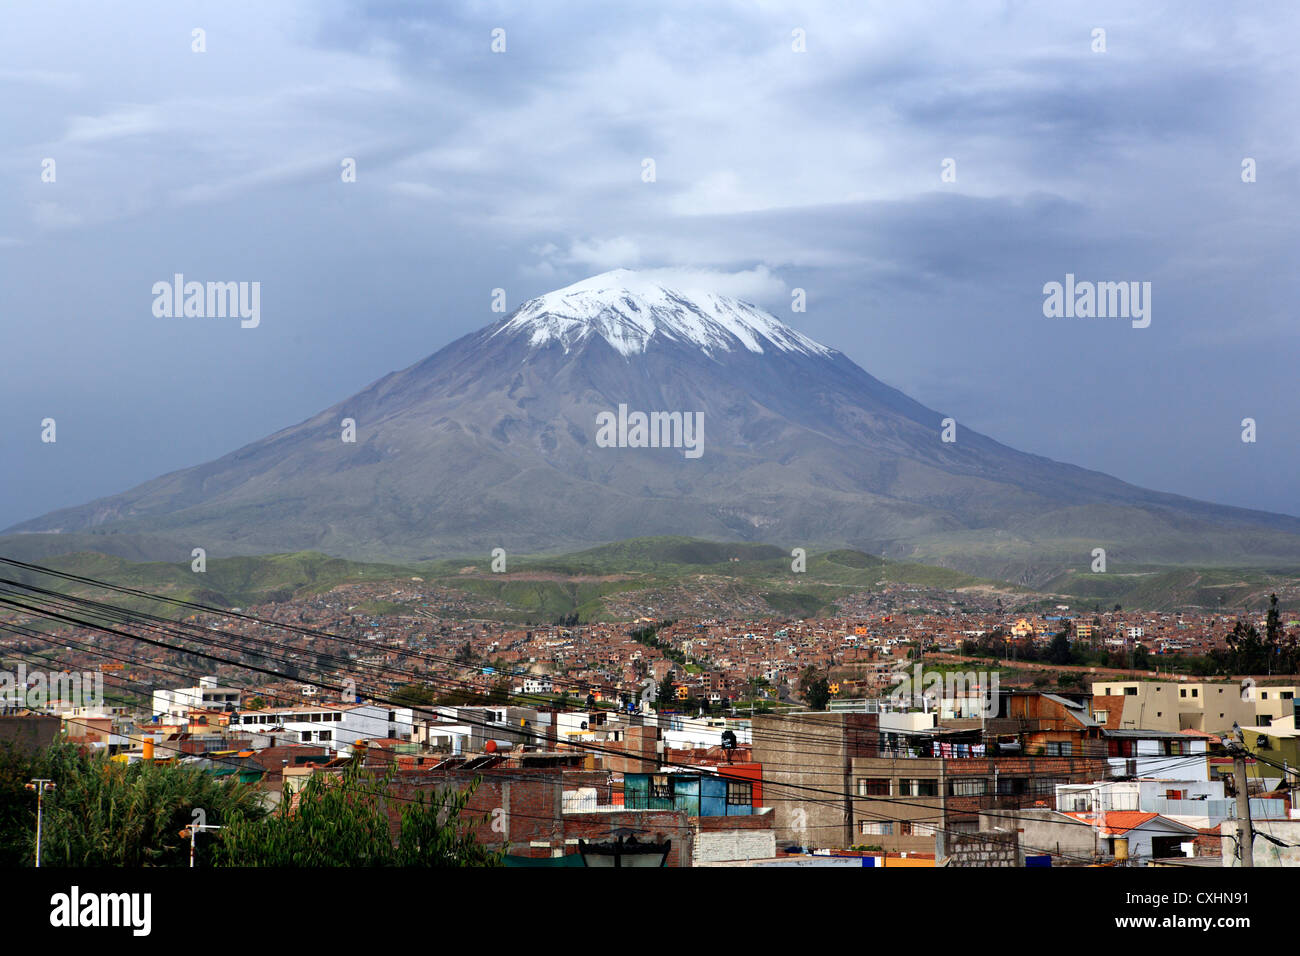 Volcano El Misti, view from Yanahuara, Arequipa, Peru Stock Photo